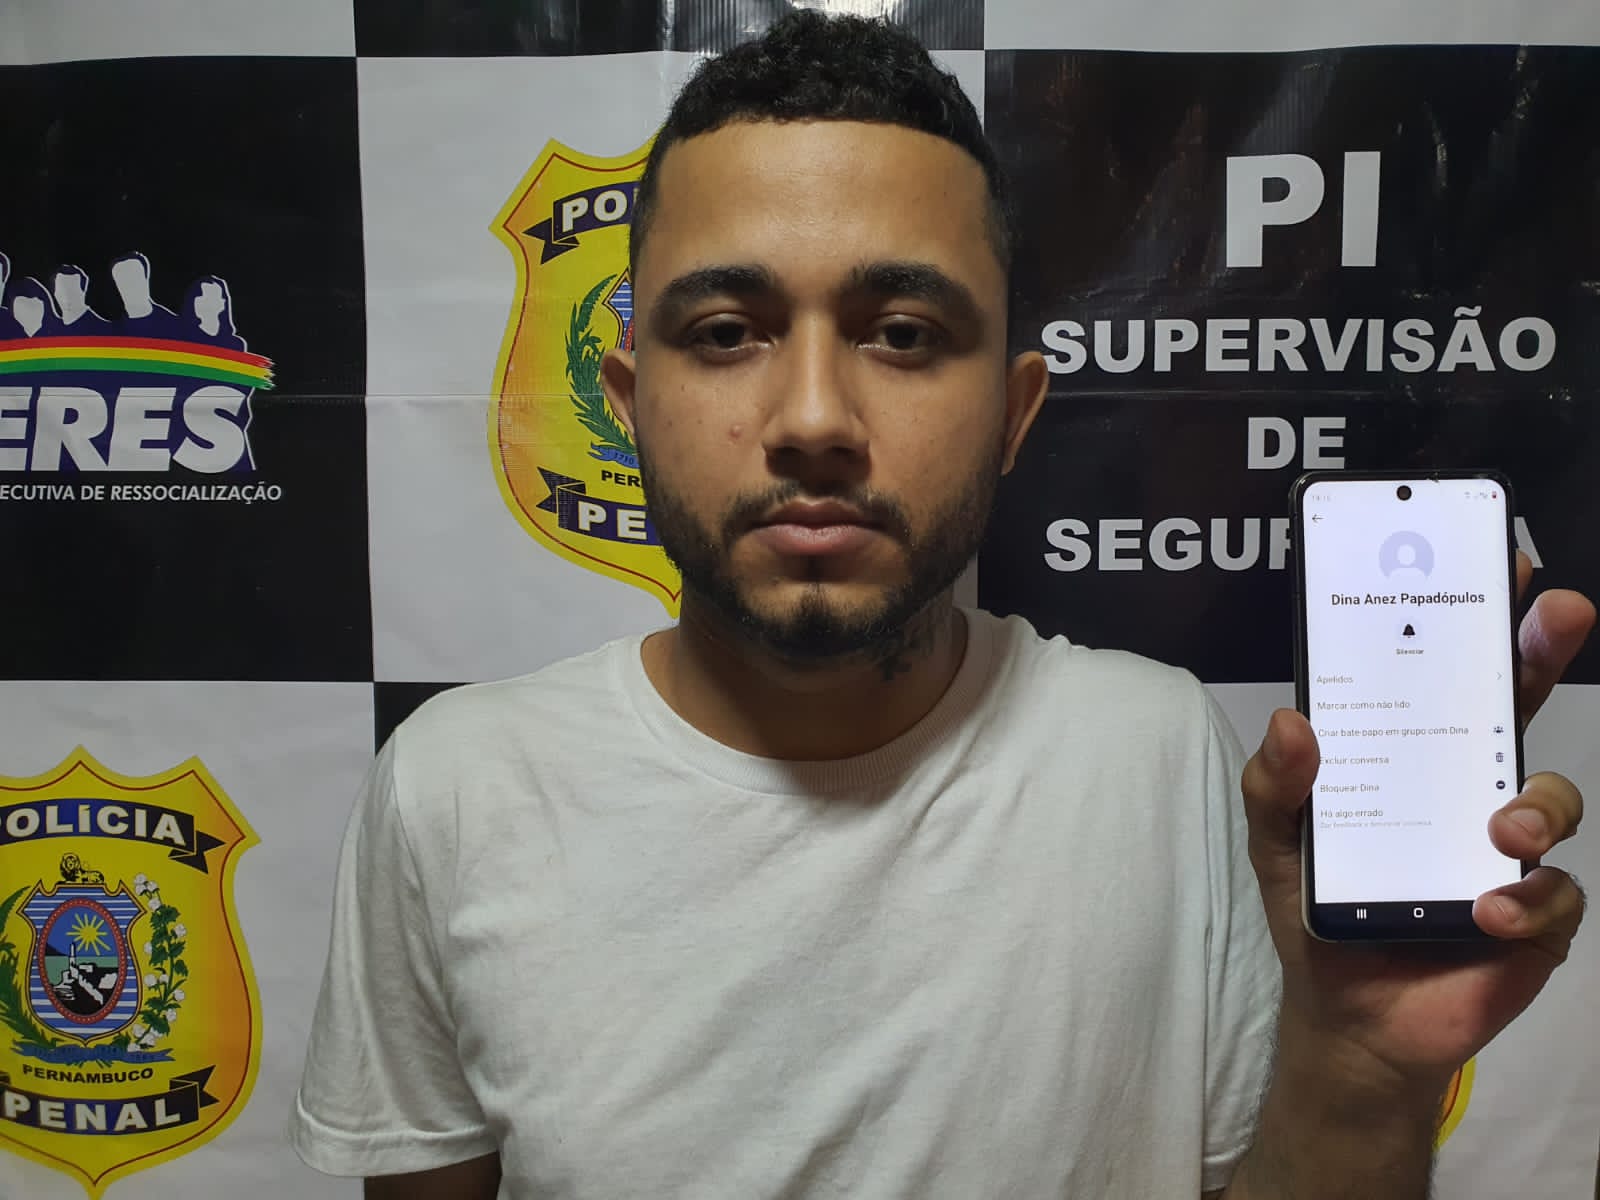 EXTORSÃO: Presidiário do Pernambuco aplicava golpes de nudez em Porto Velho